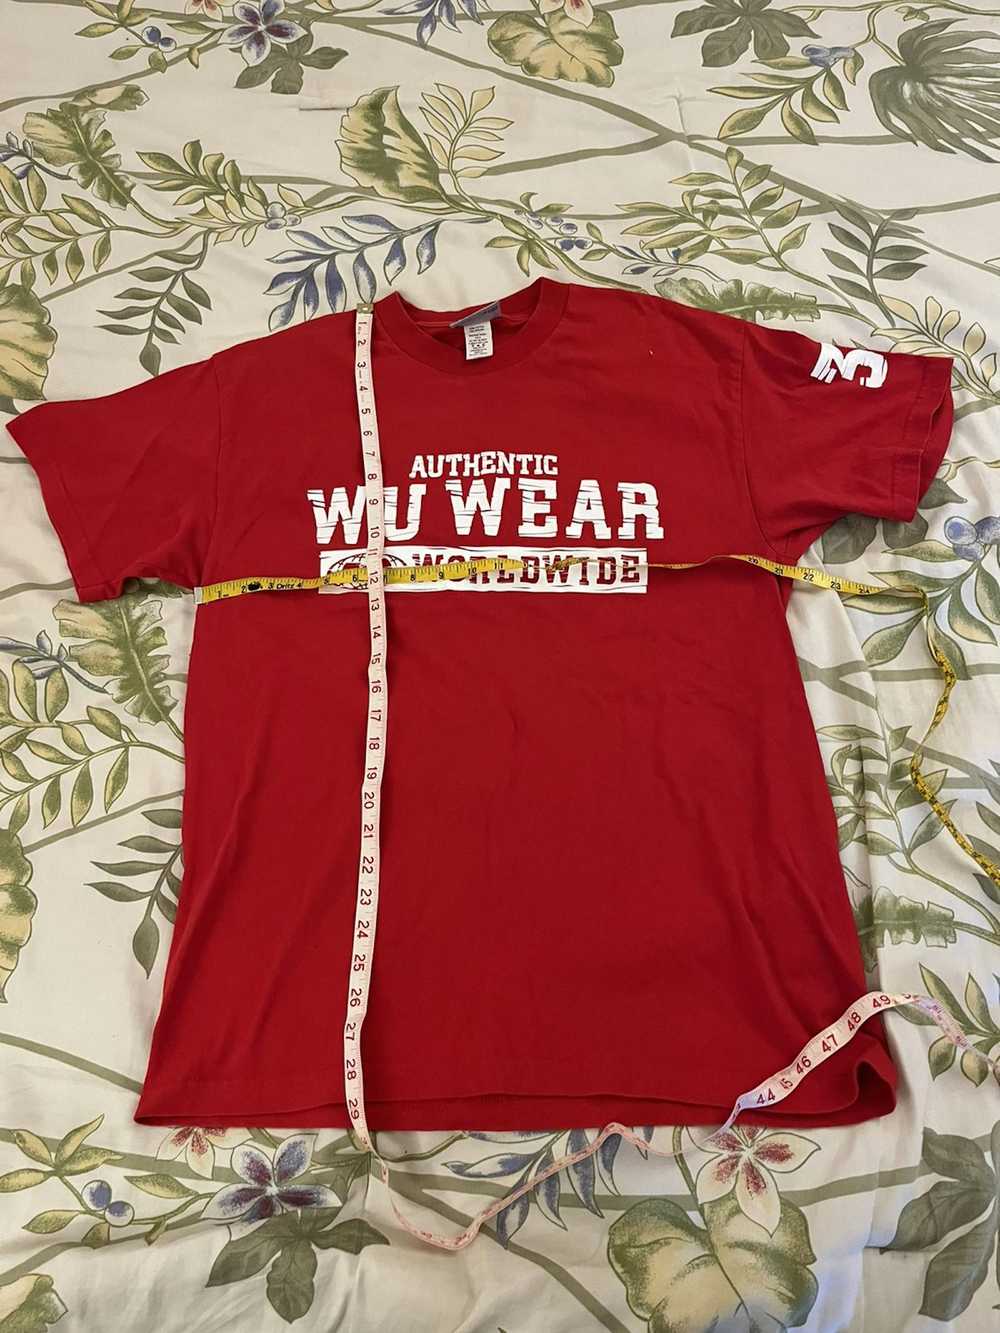 Vintage × Wu Wear Vintage 90s Wu Wear logo shirt - image 4